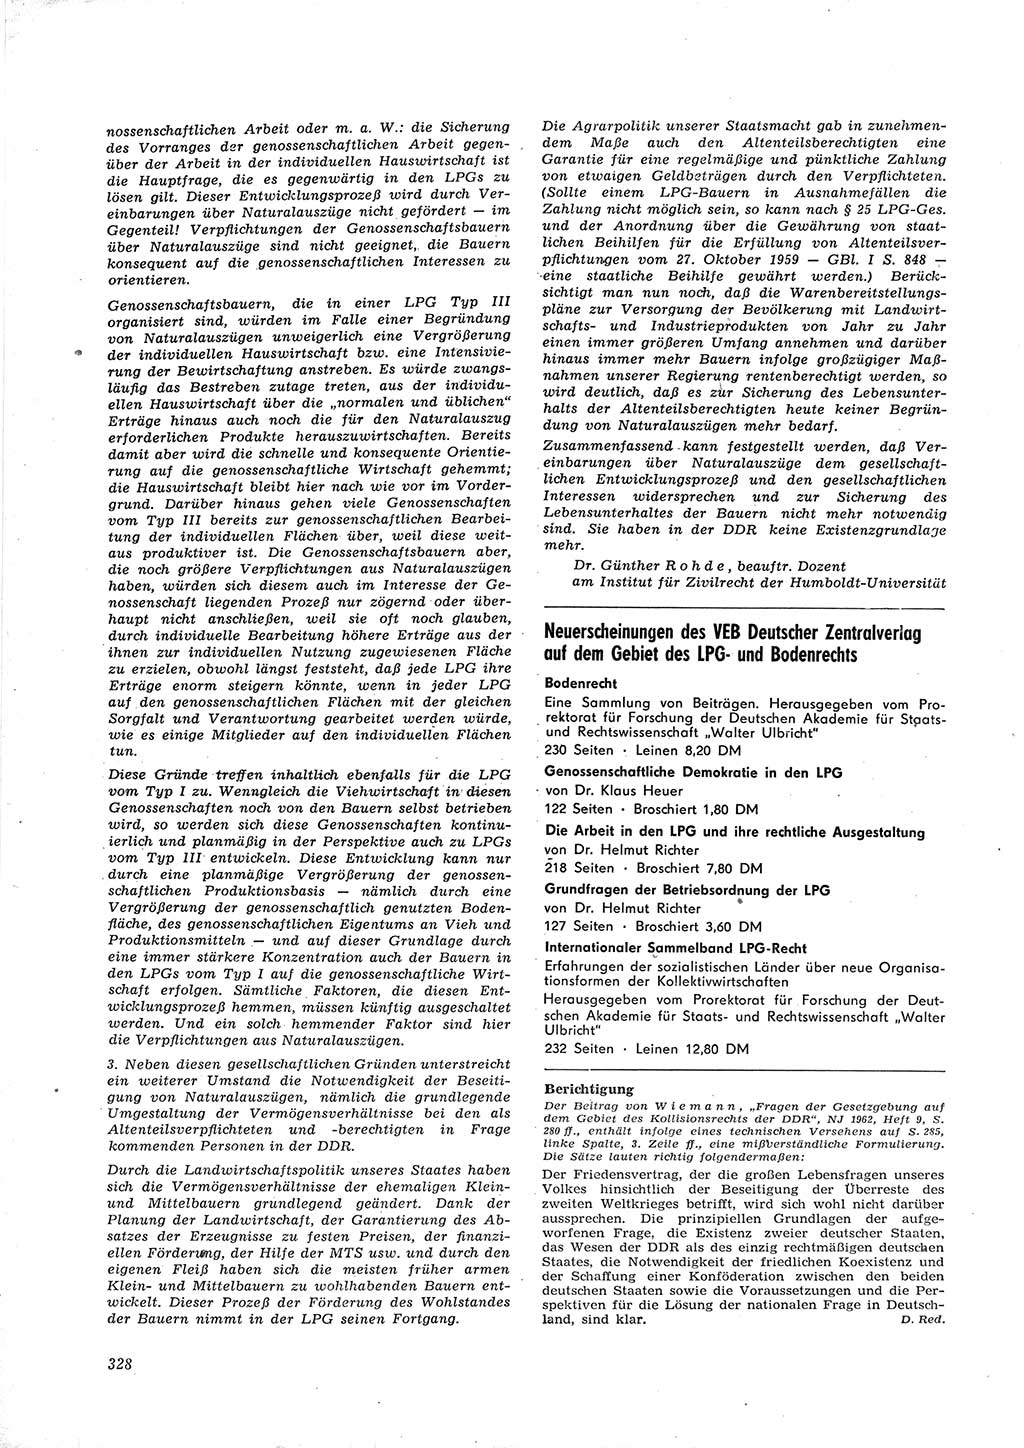 Neue Justiz (NJ), Zeitschrift für Recht und Rechtswissenschaft [Deutsche Demokratische Republik (DDR)], 16. Jahrgang 1962, Seite 328 (NJ DDR 1962, S. 328)